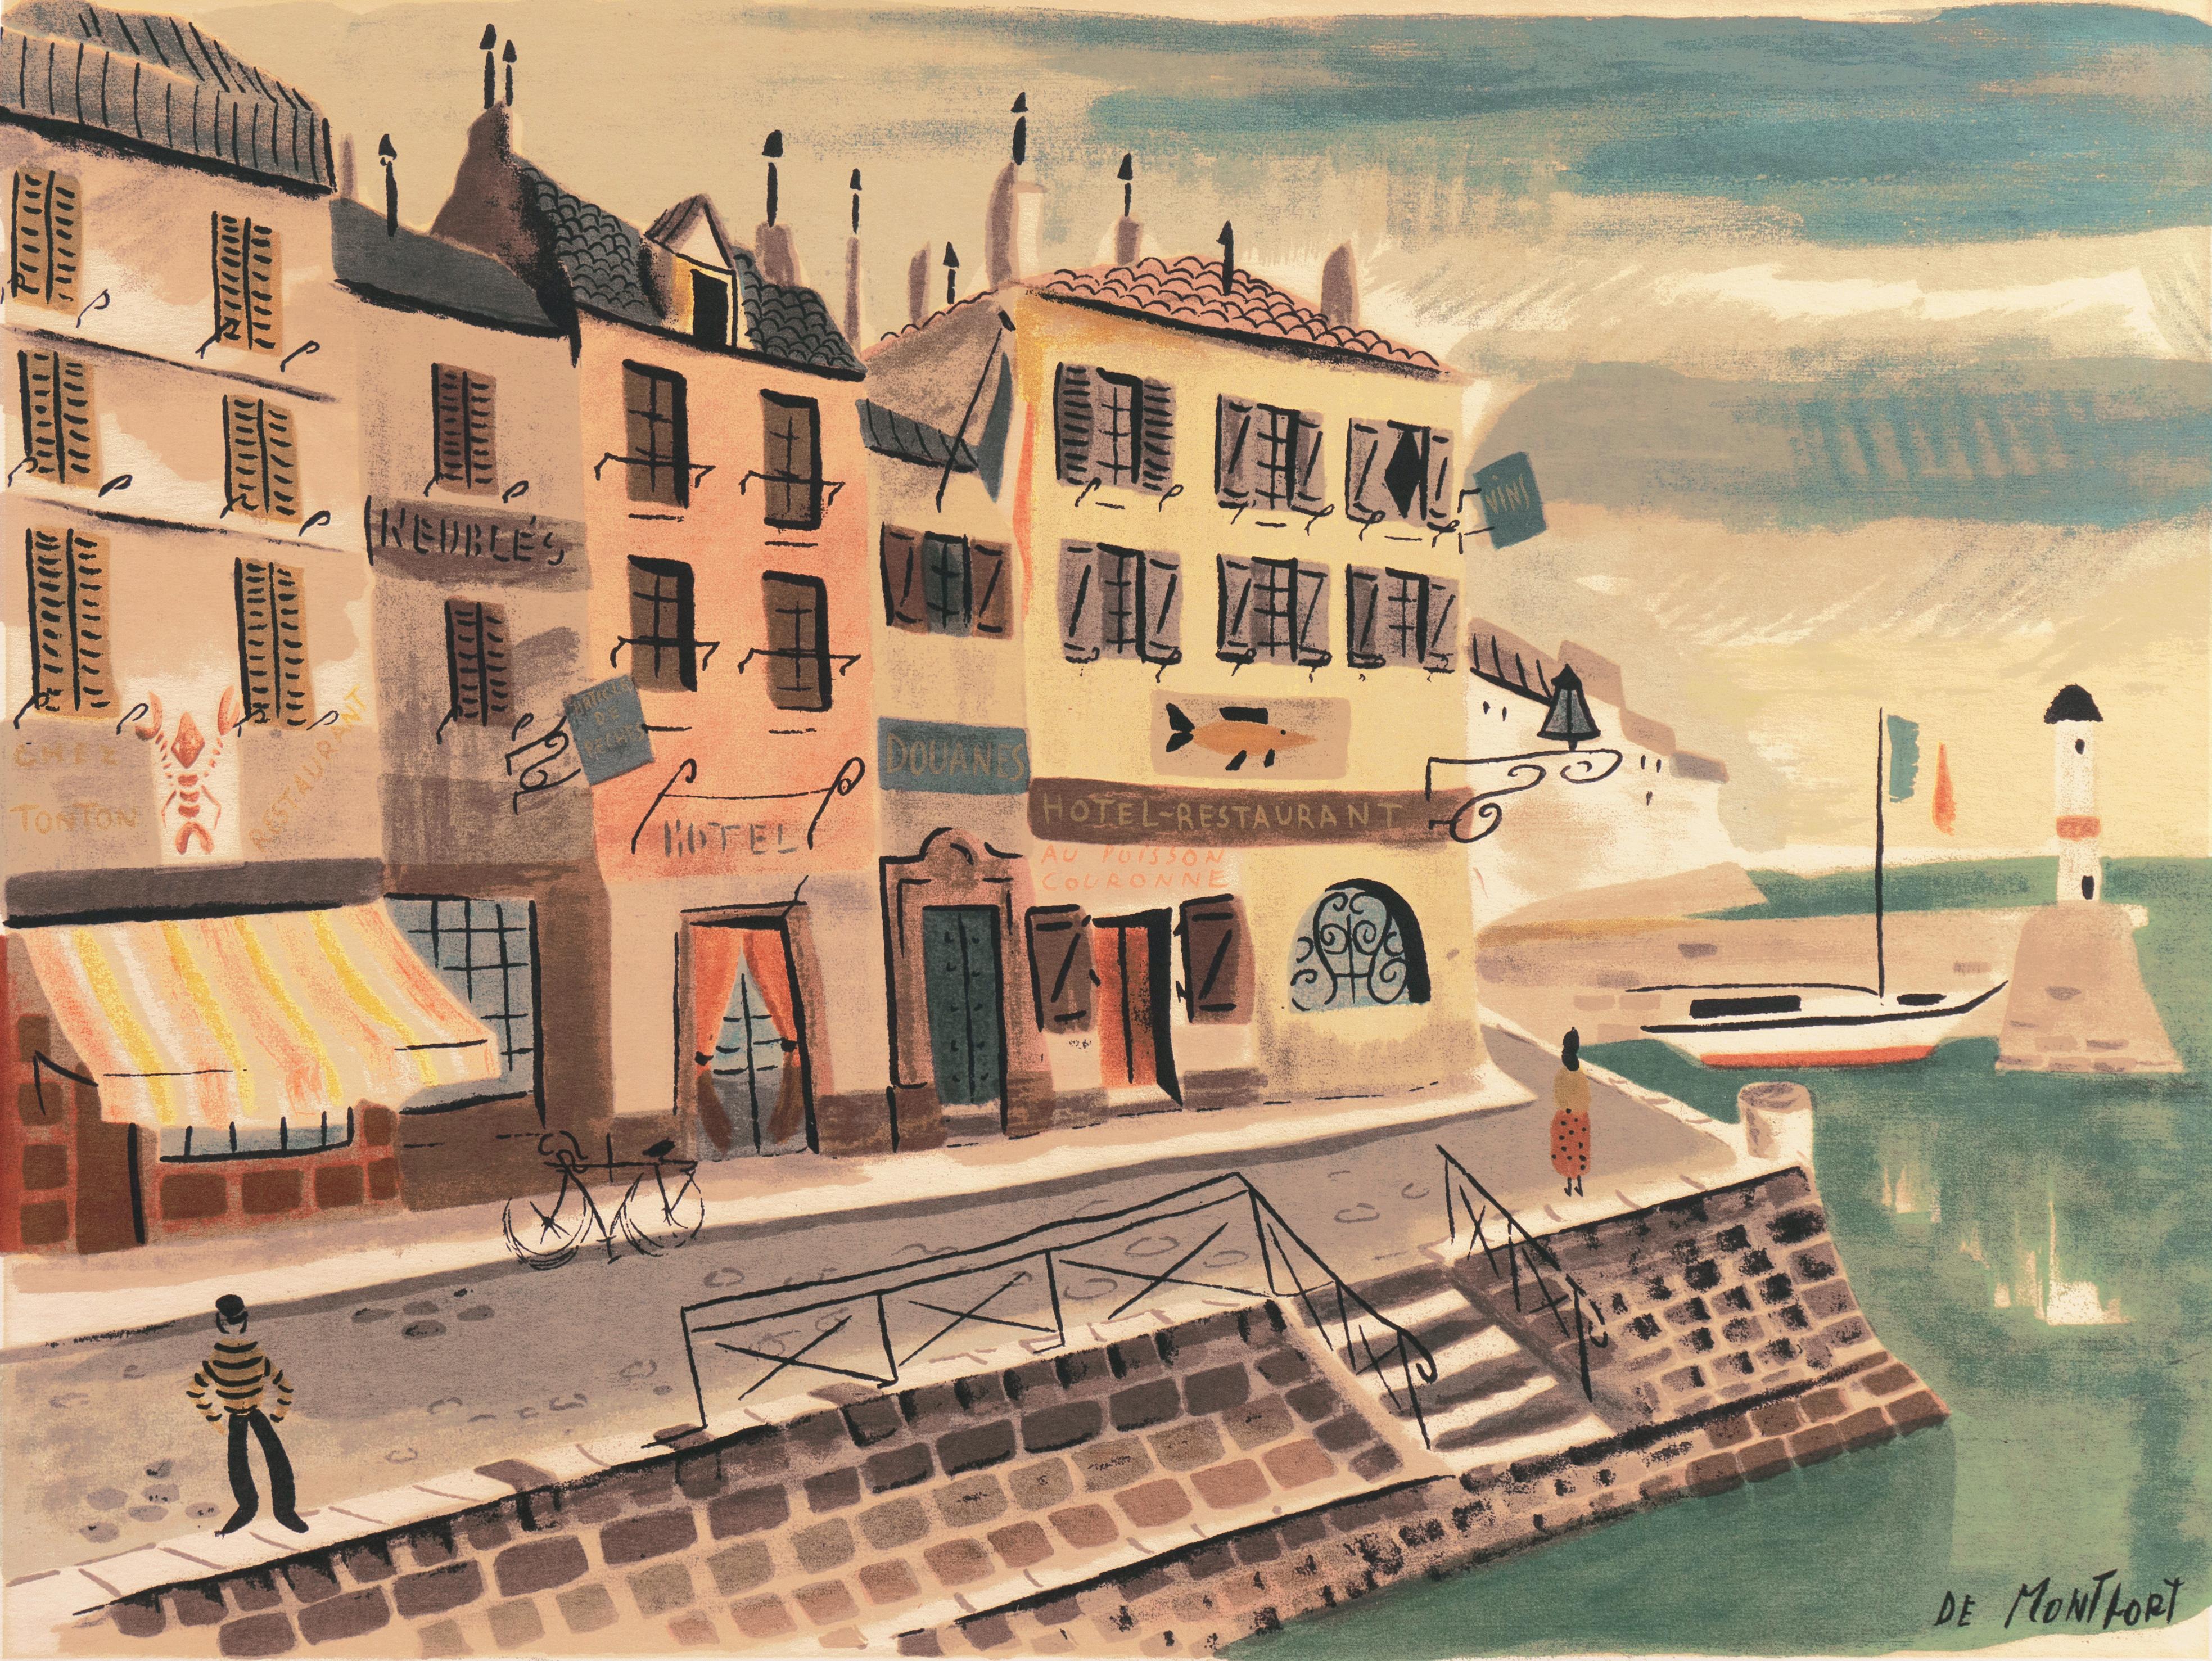 Charles de Montfort Landscape Print - 'Breton Village with Lighthouse', Post-Impressionism, Brittany, Modernism